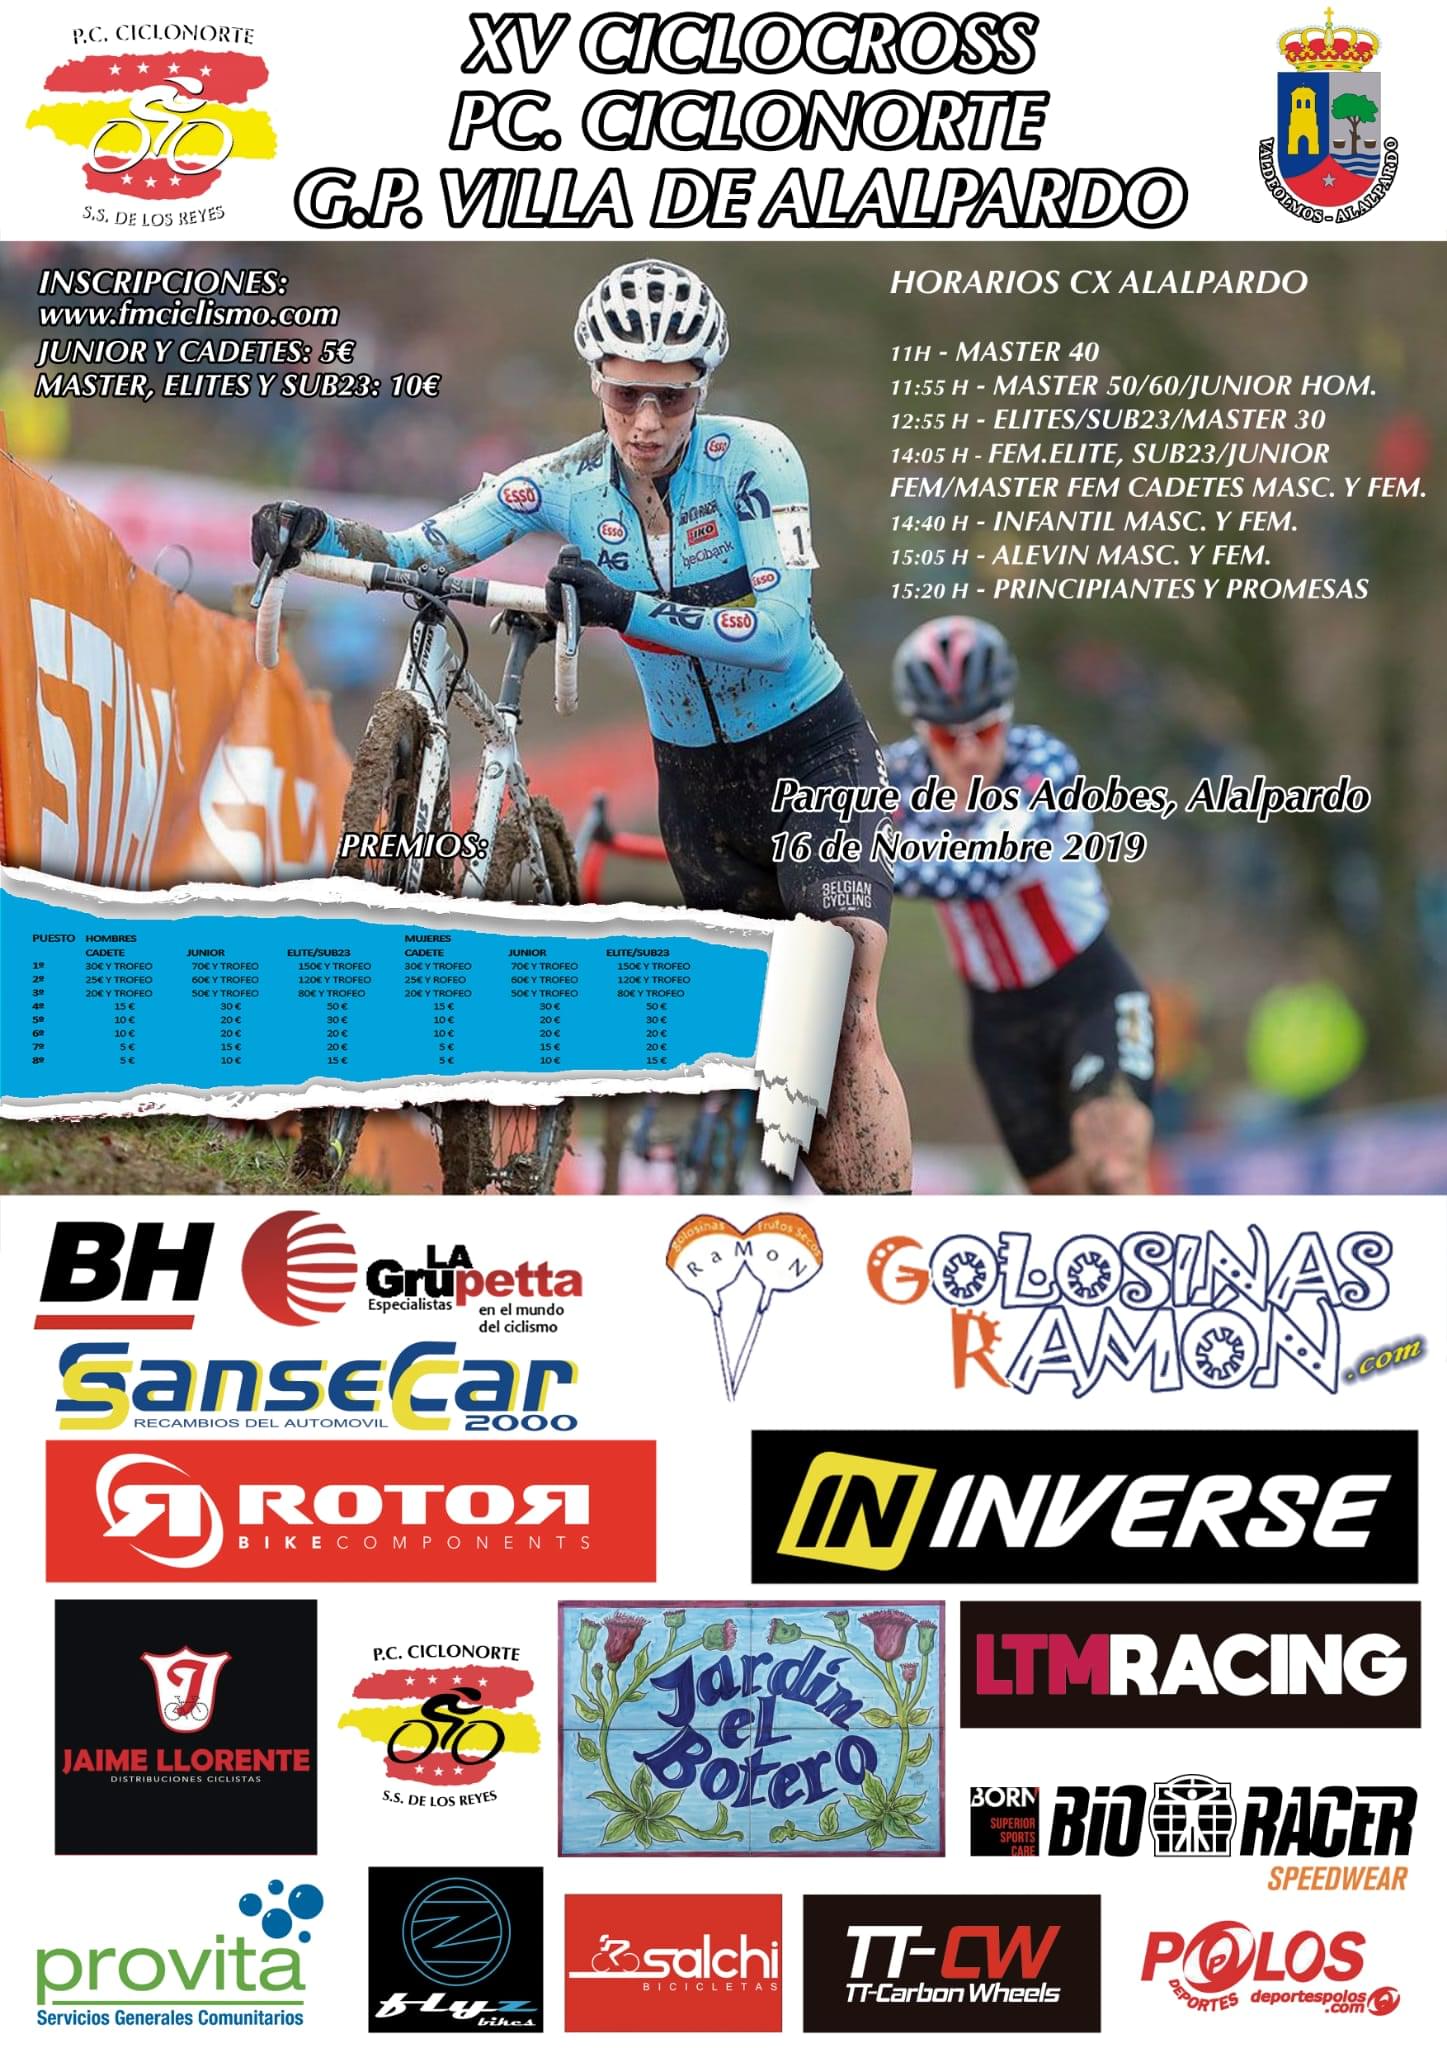 Alalpardo acoge el 16 de Noviembre el XV Ciclocross Peña Ciclista Ciclonorte